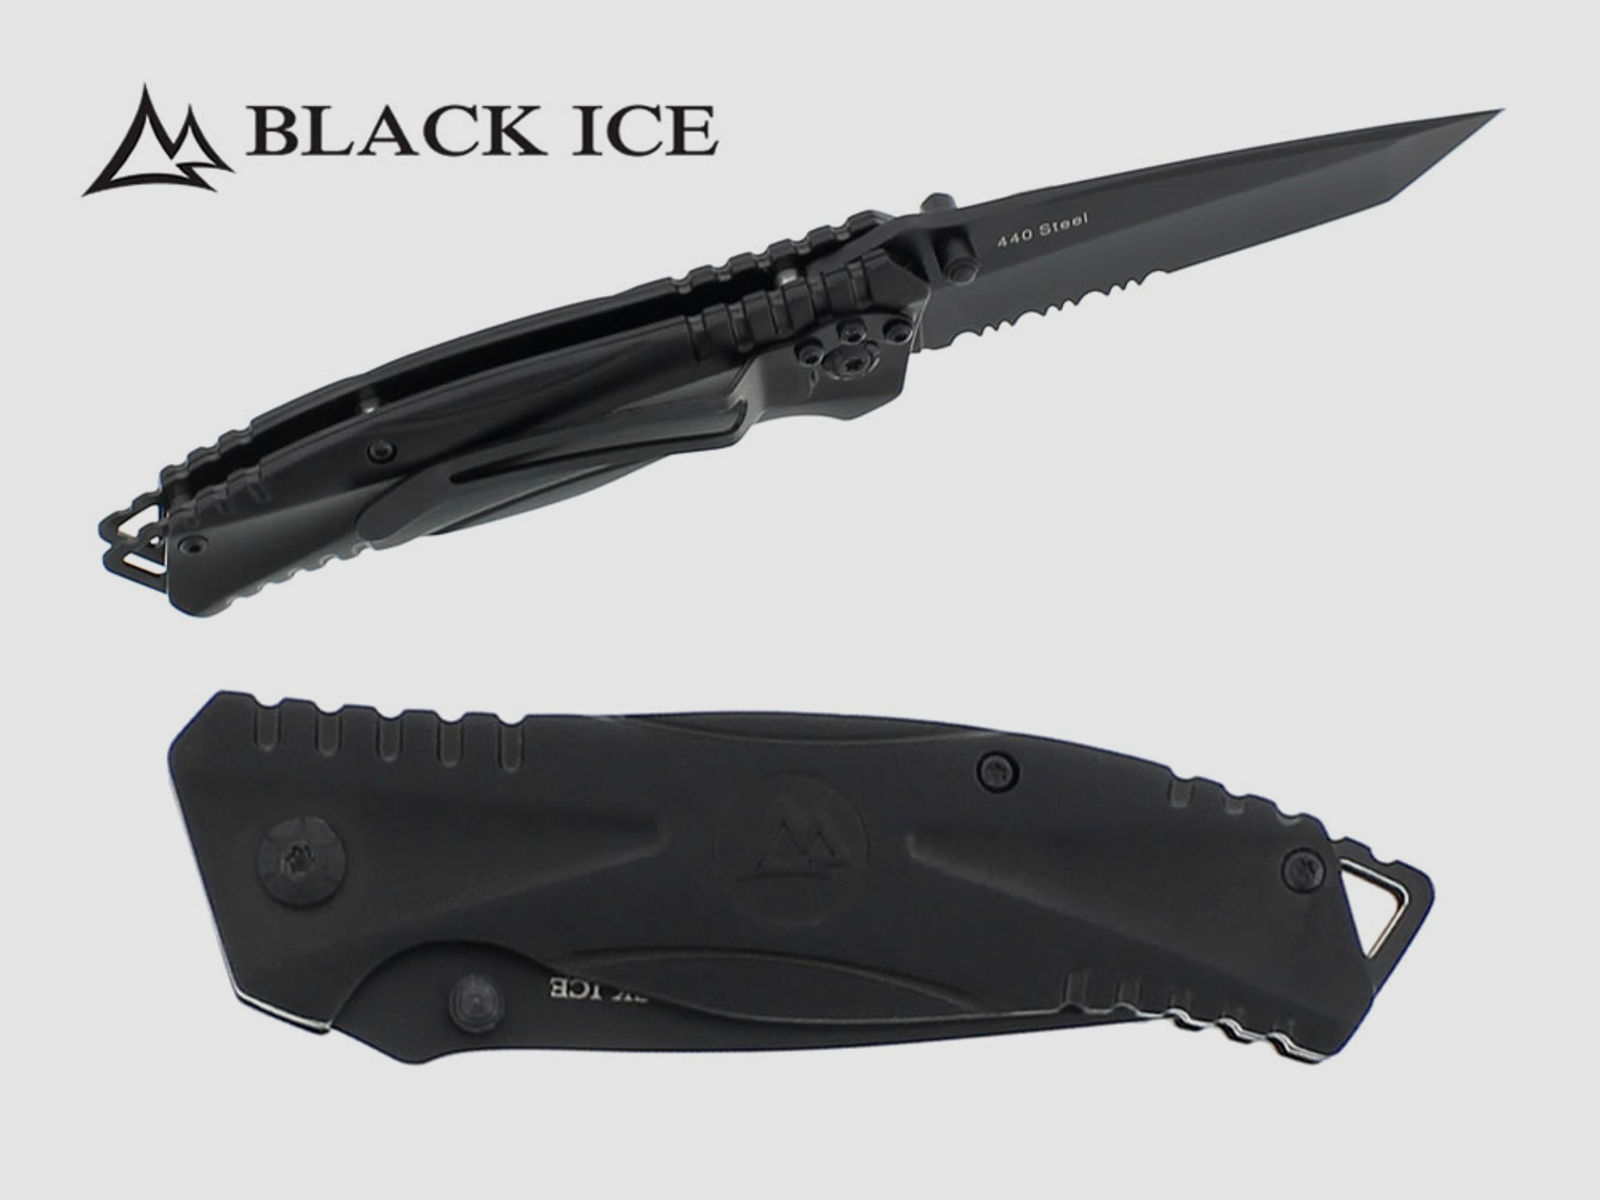 Einhandmesser BLACK ICE One Stahl 440er KlingenlĂ¤nge 8,7 mit GĂĽrtelclip (P18)